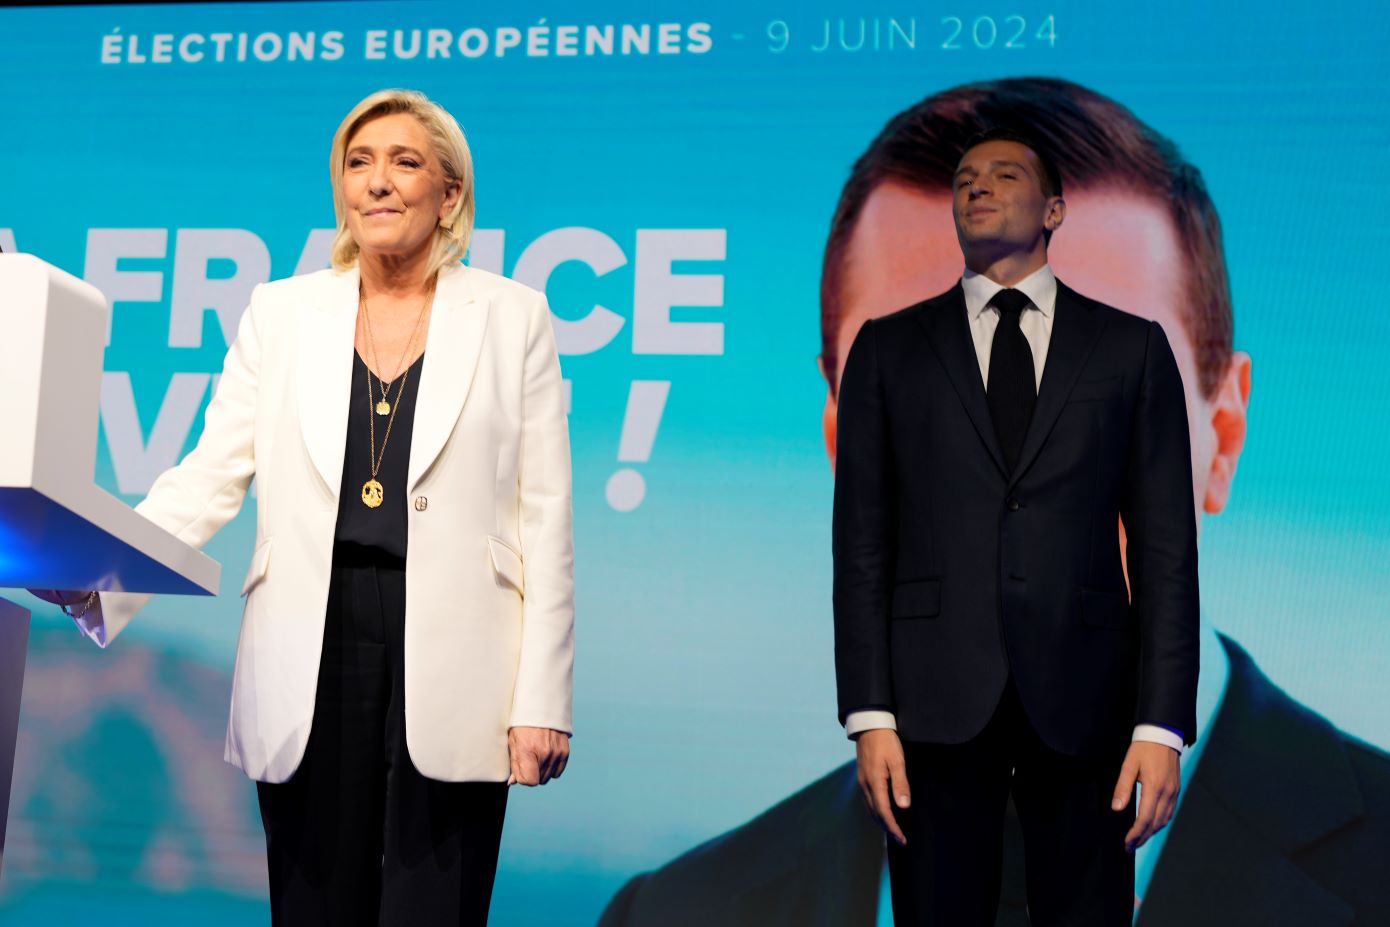 Ο ακροδεξιός «Εθνικός Συναγερμός» στη Γαλλία συγκεντρώνει 37% στον πρώτο γύρο, σύμφωνα με δημοσκόπηση